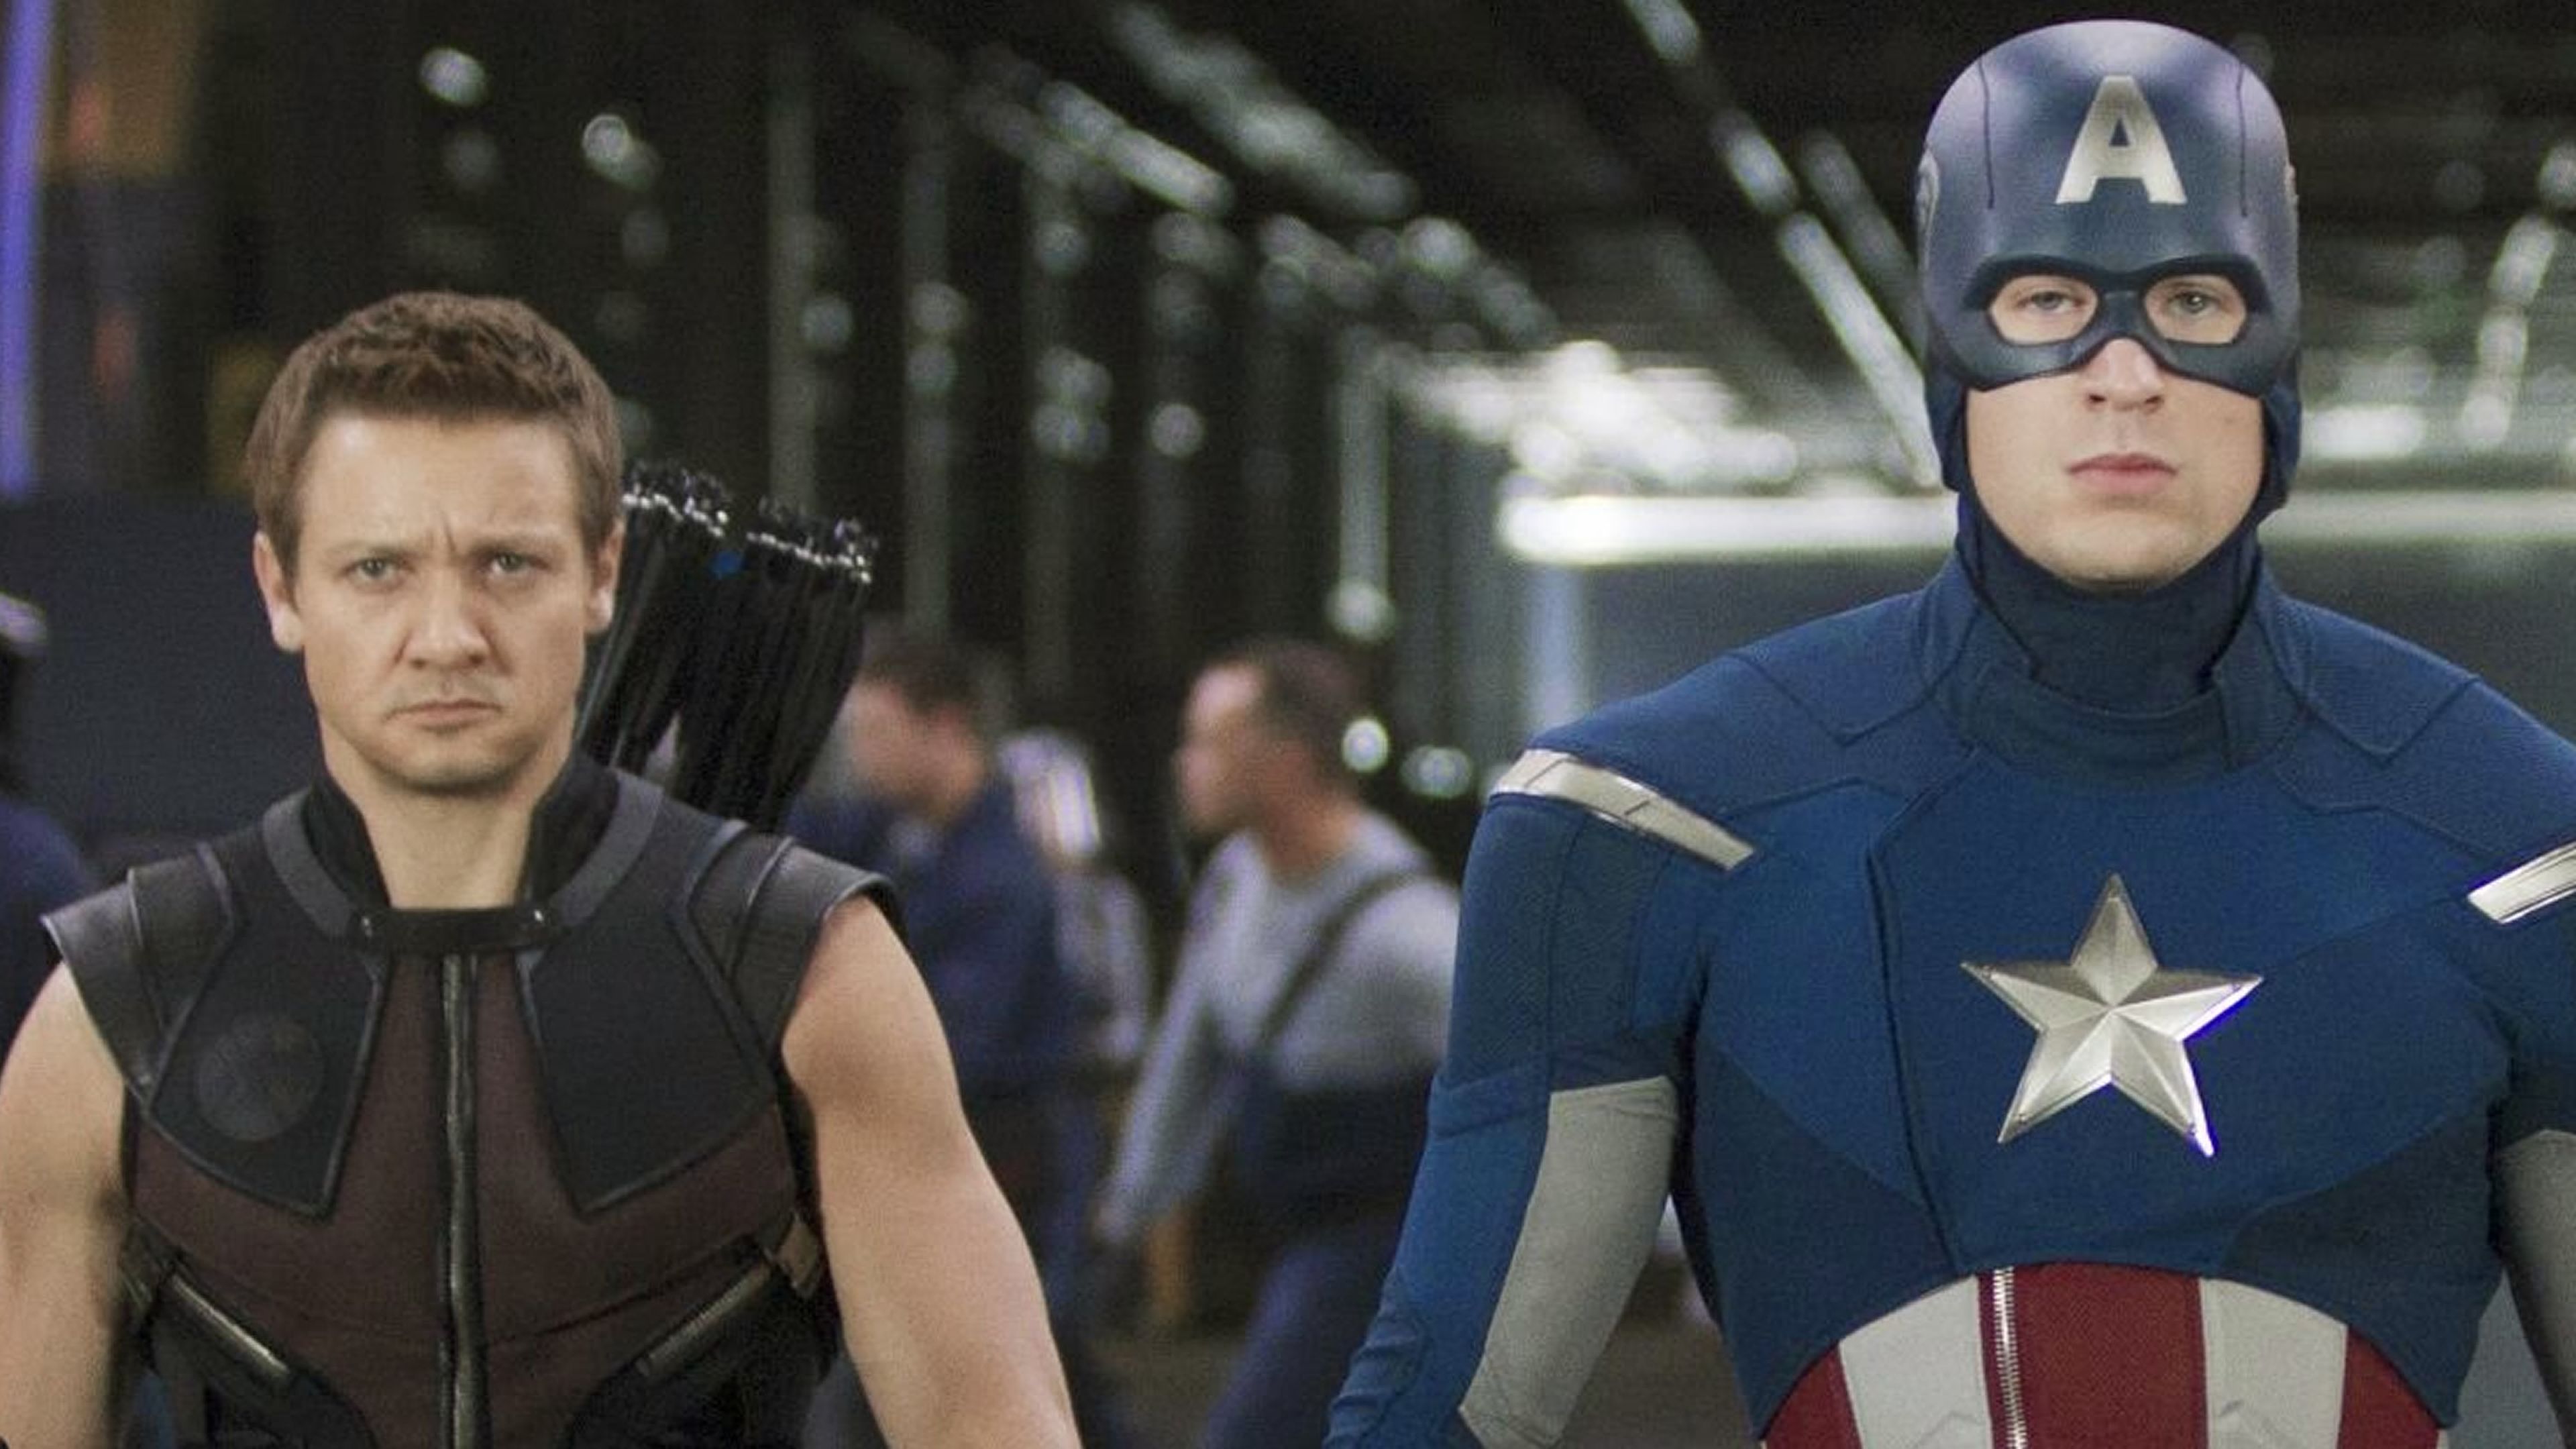 America 3. Соколиный глаз и Капитан Америка. Капитан Америка Джереми Реннер. Соколиный глаз первый мститель Противостояние. Captain America 3.